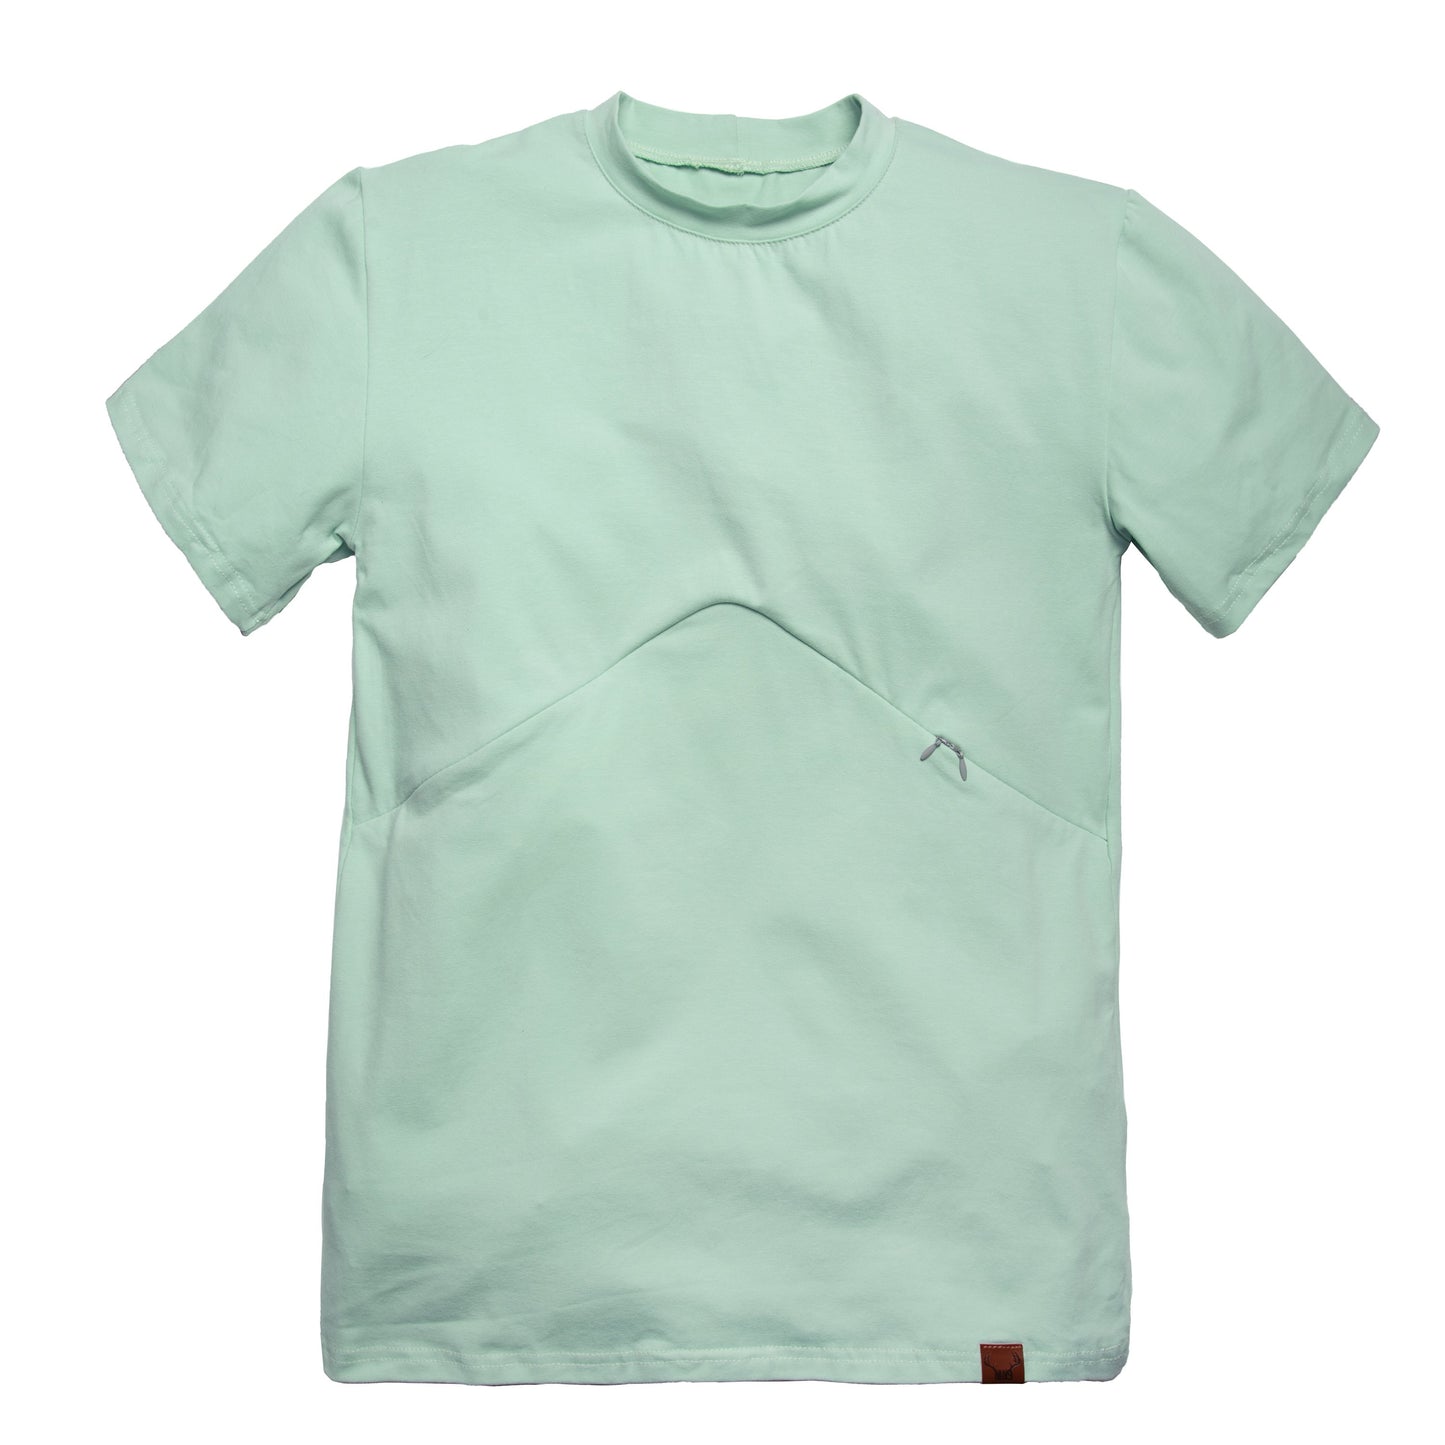 XXLARGE - PAPARMANE t-shirt boyfriend 3 en 1 maternité, allaitement, postpartum - léger défaut ( réf #229)